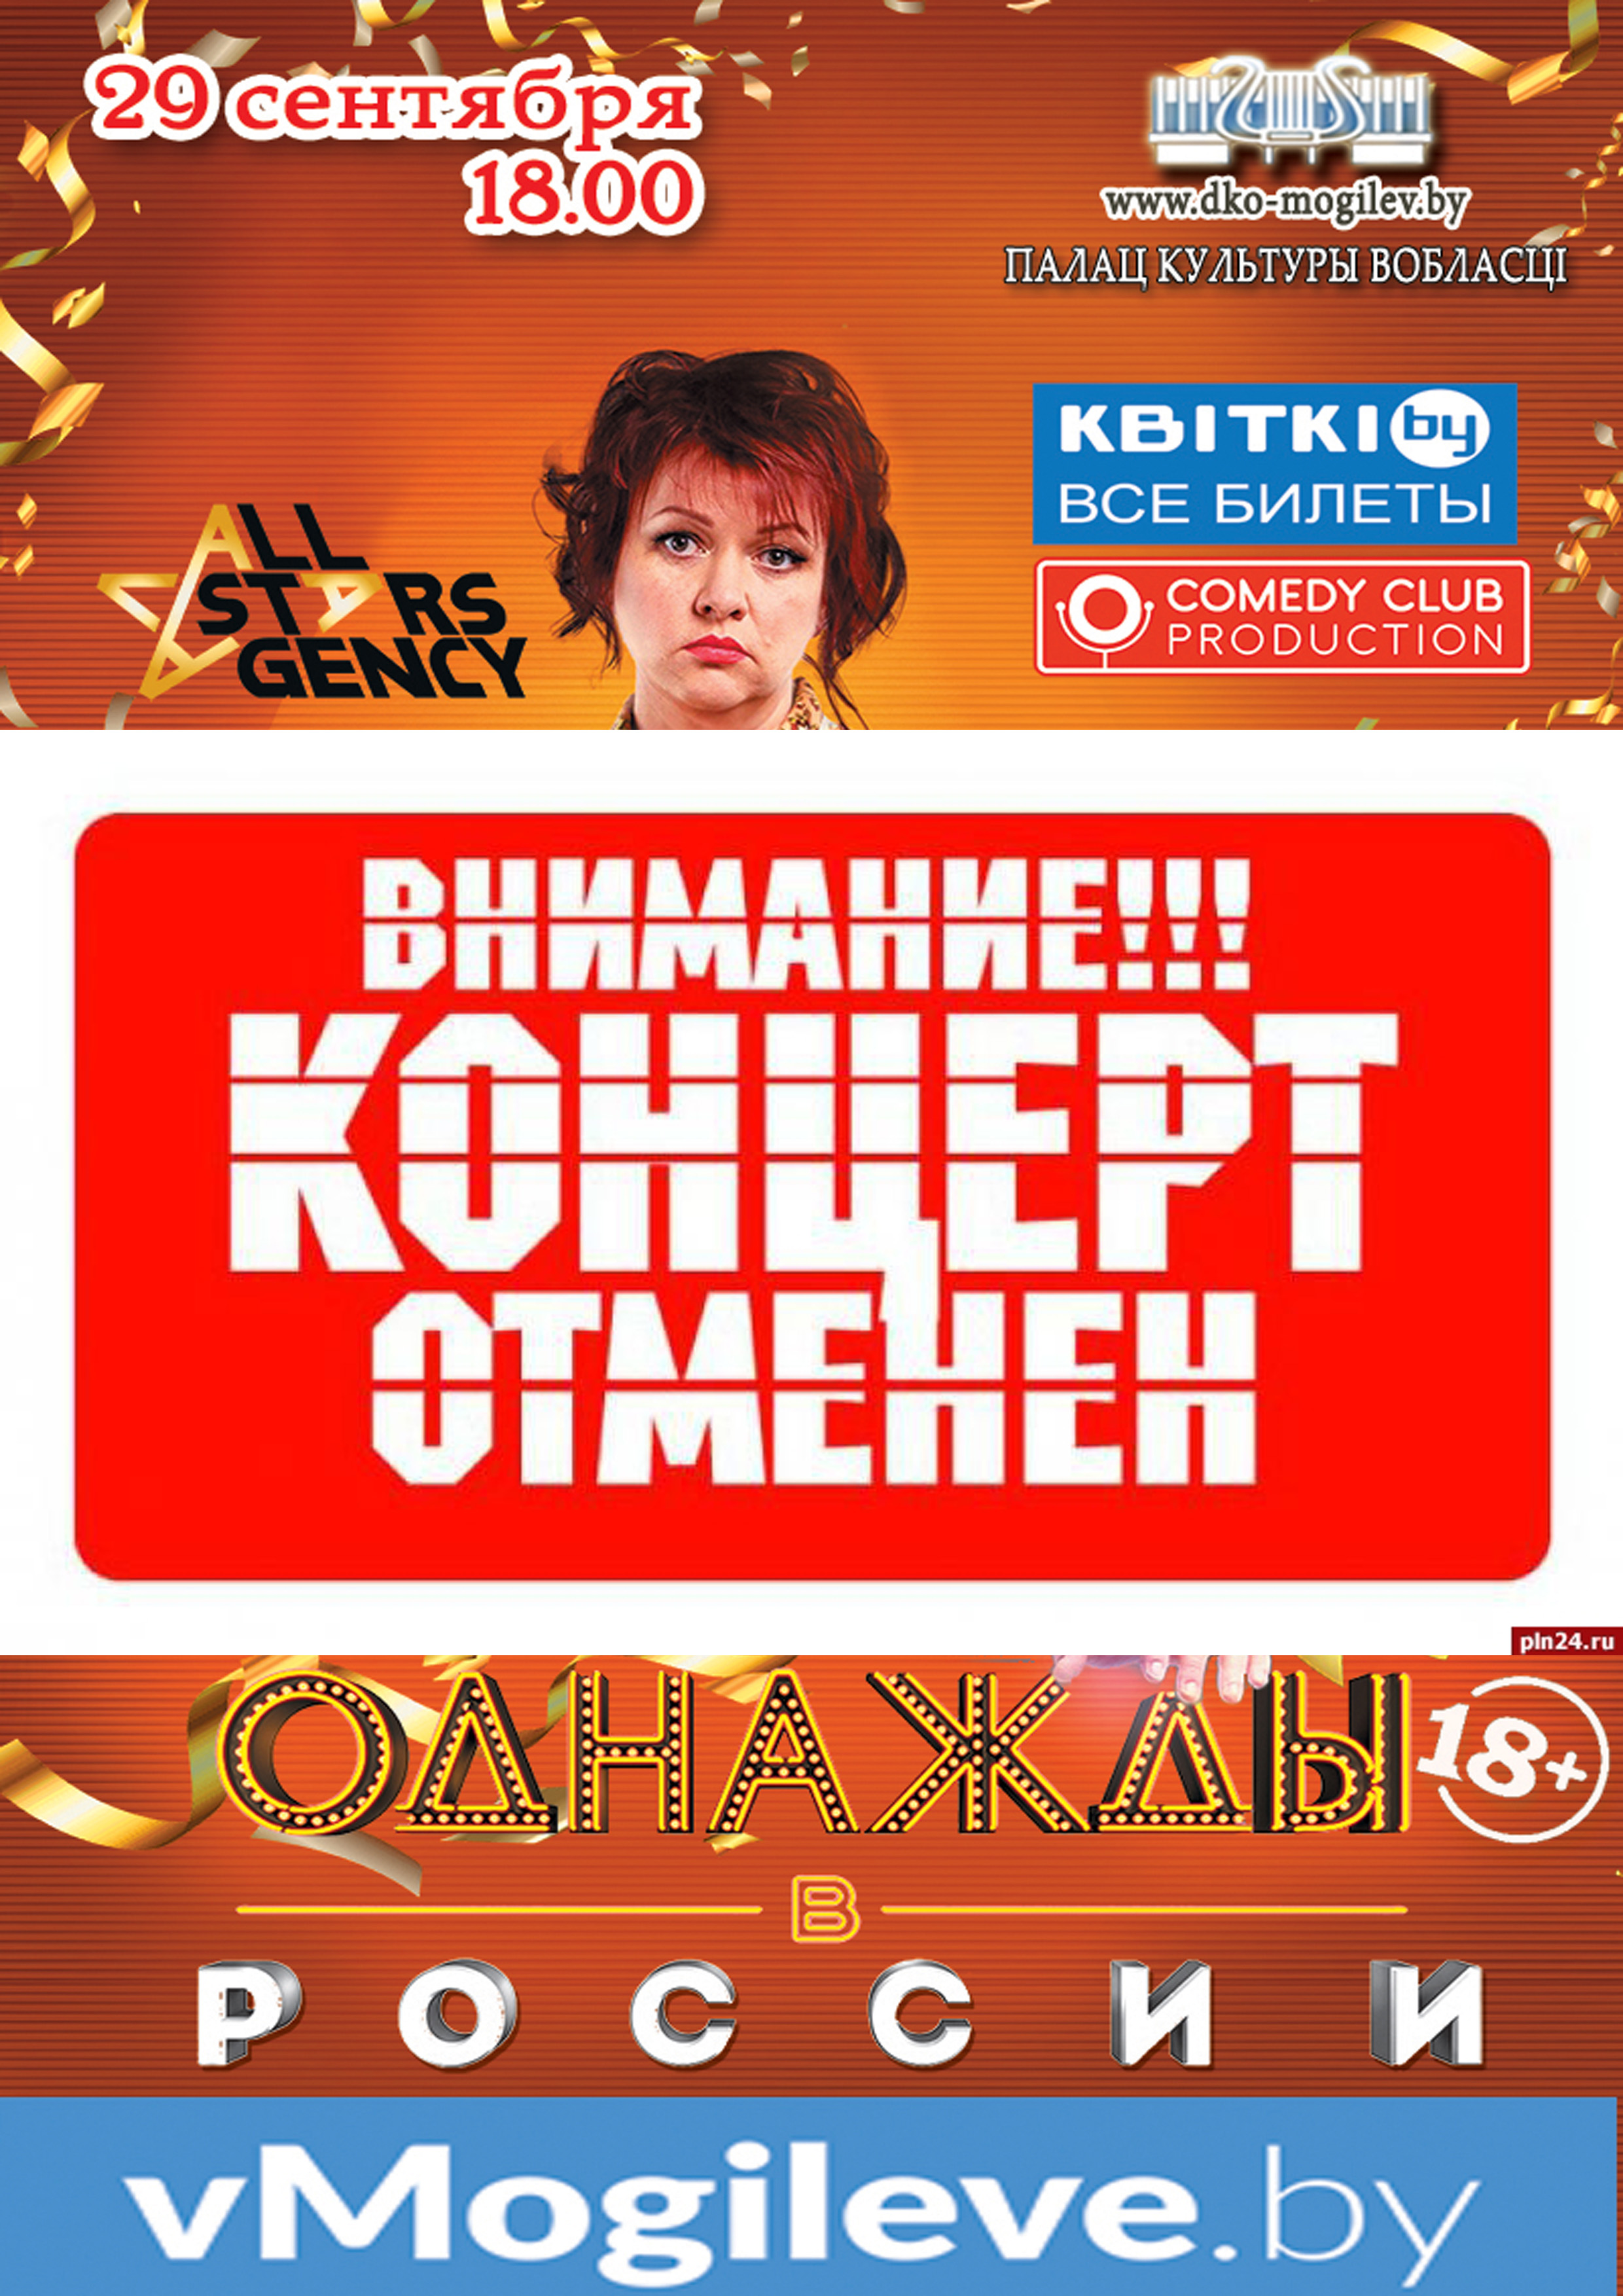 Сатирическое шоу “Однажды в России” отменяется